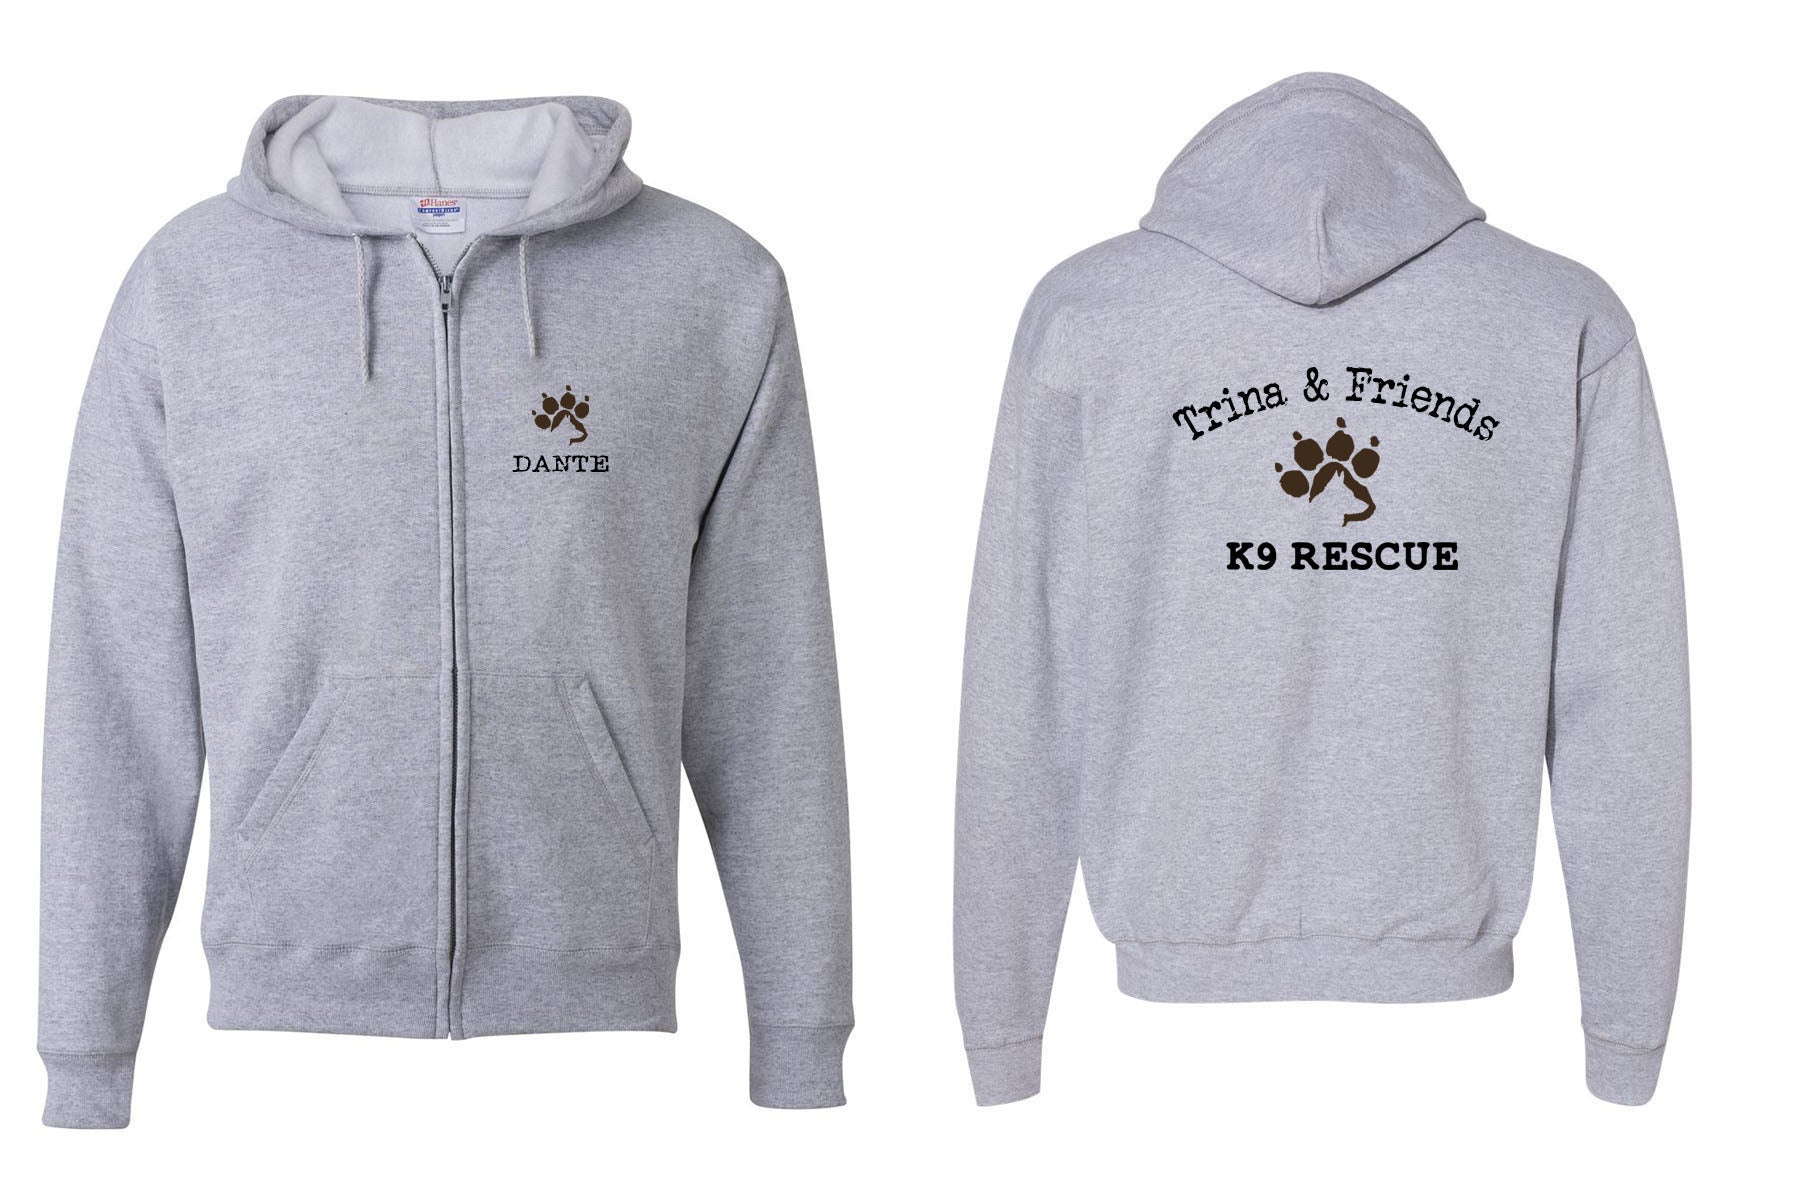 Trina & Friends design 6 Zip up Sweatshirt